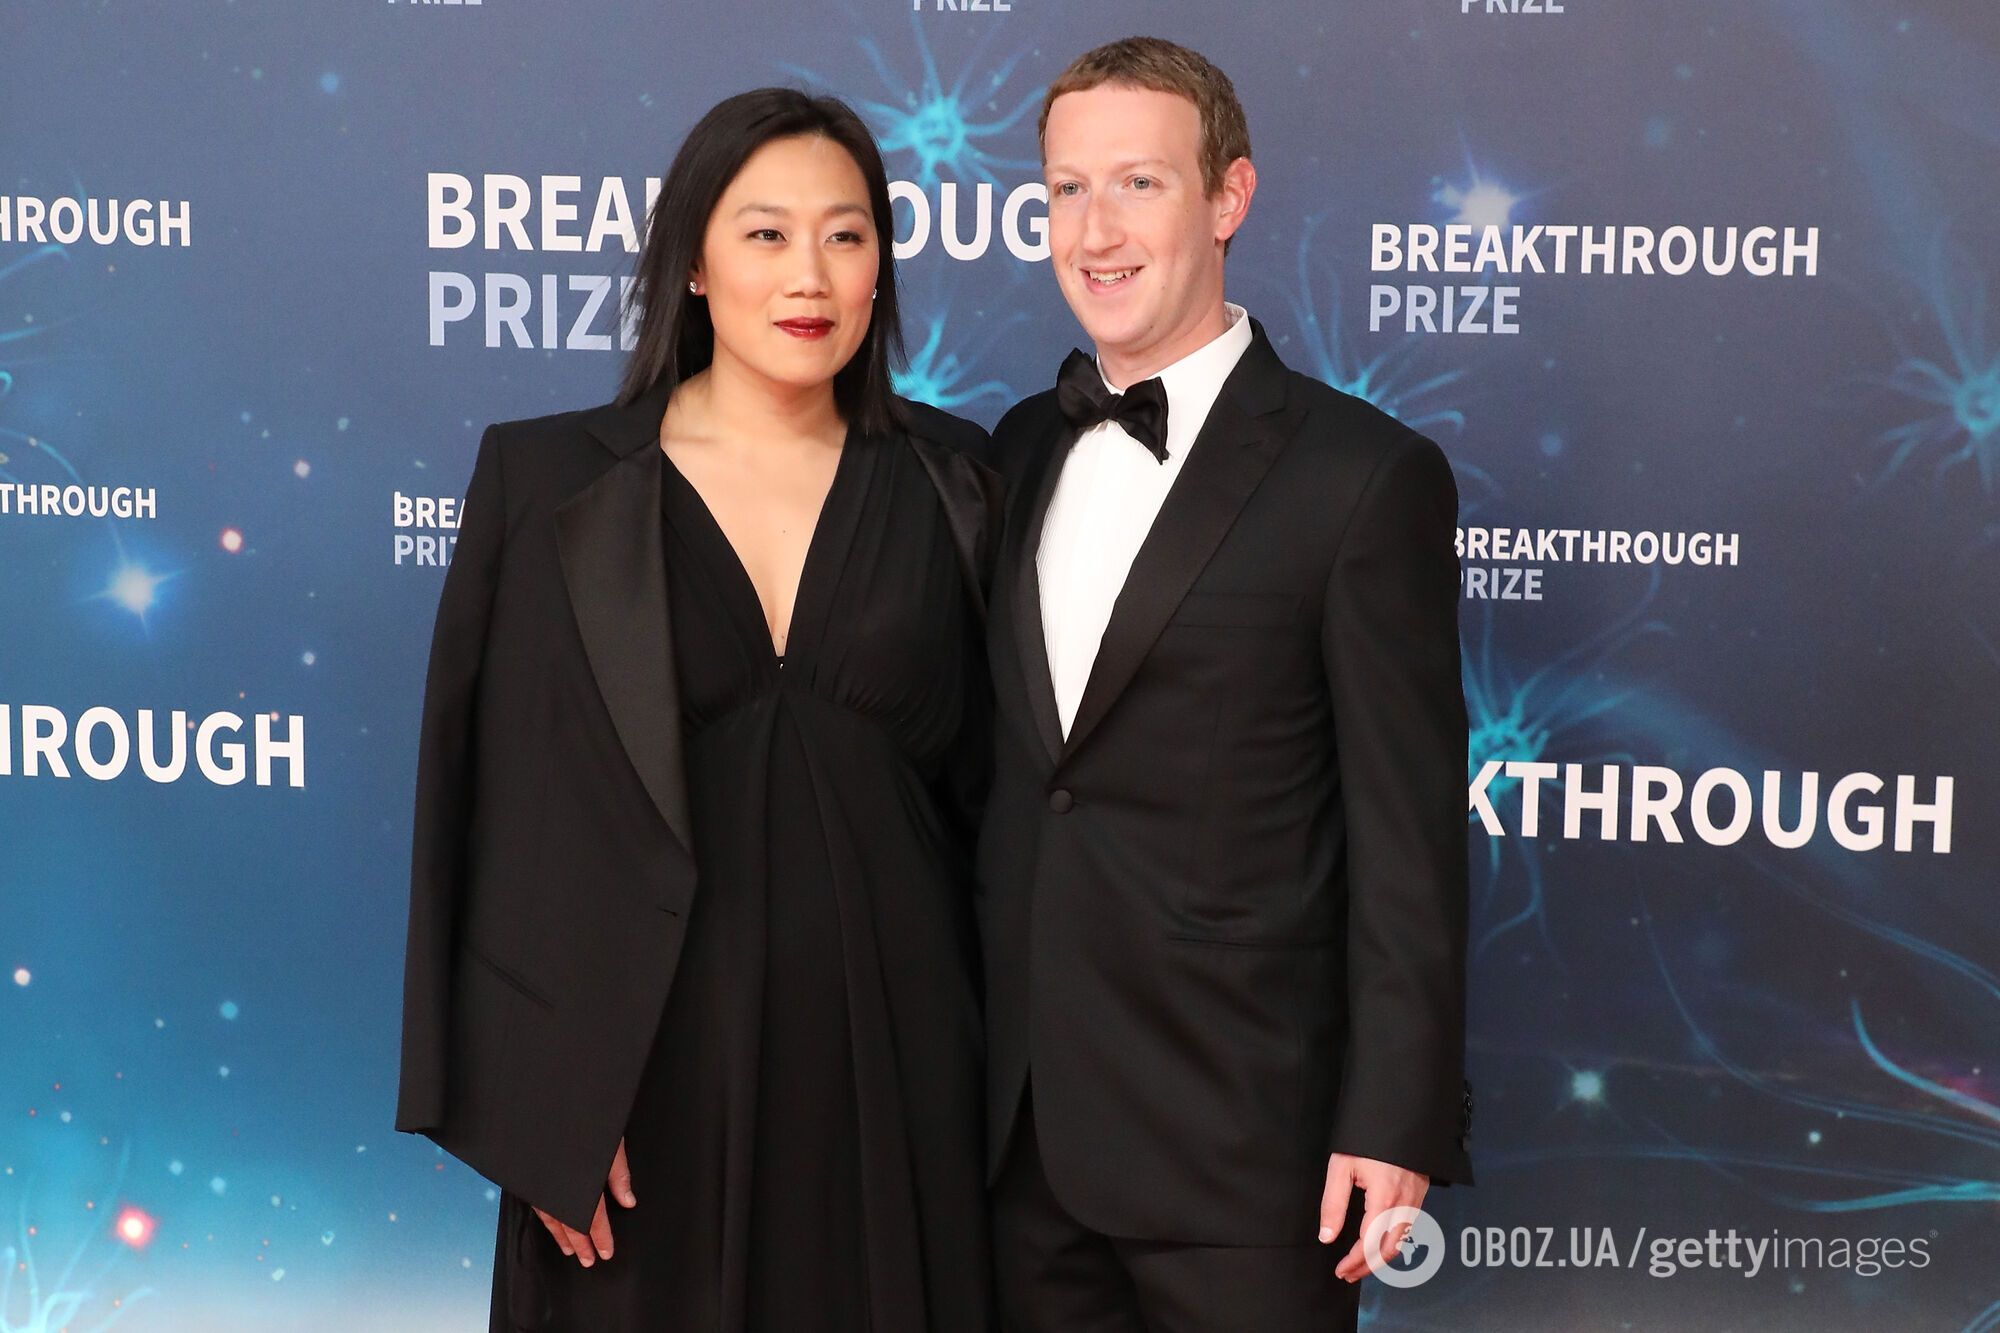 Основатель Facebook Марк Цукерберг в третий раз станет отцом: появилось трогательное фото с его беременной женой